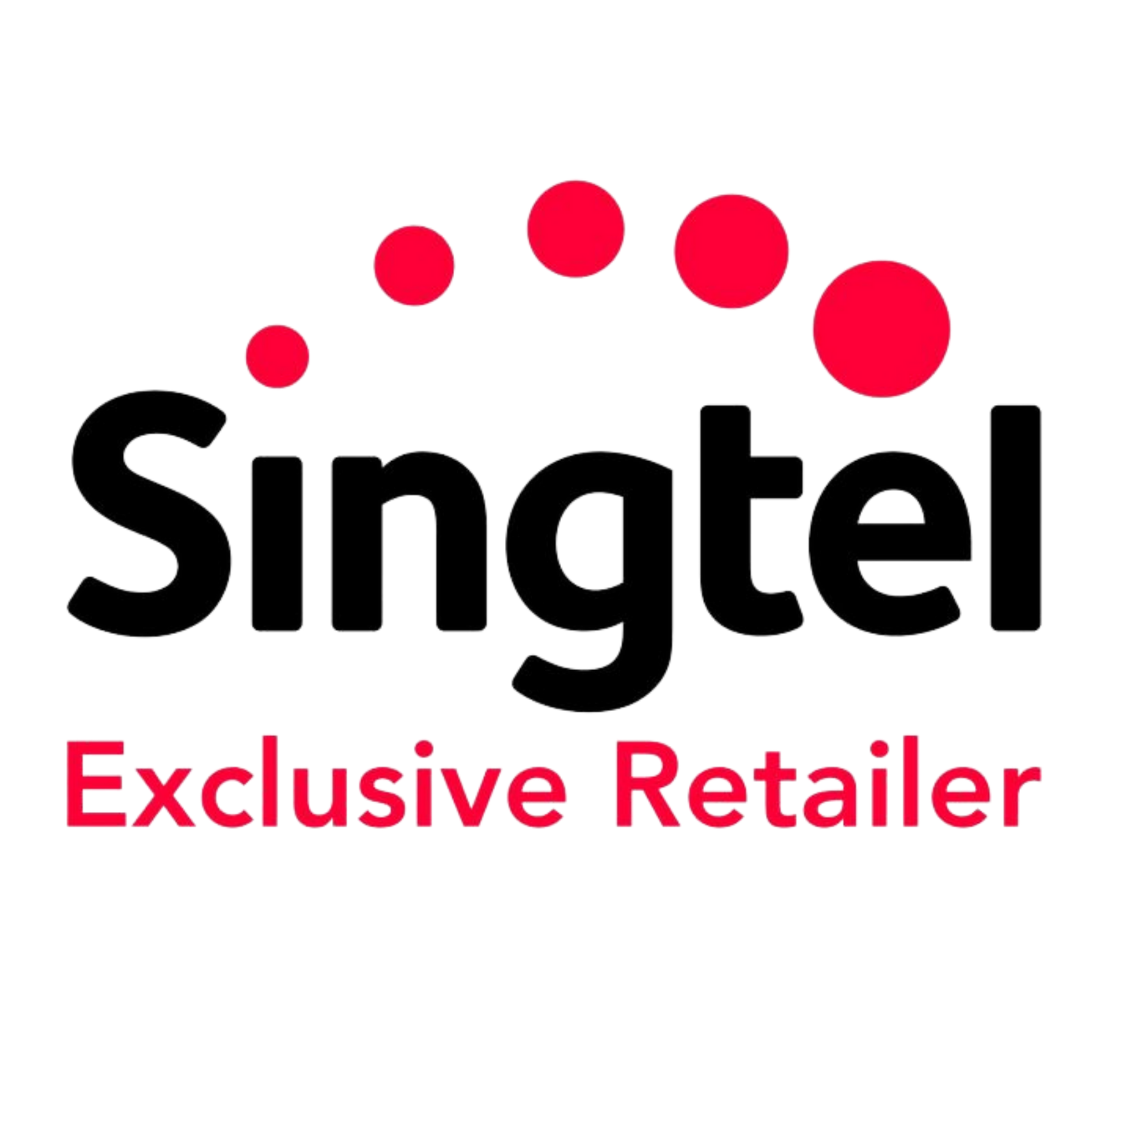 Singtel Exclusive Retailer